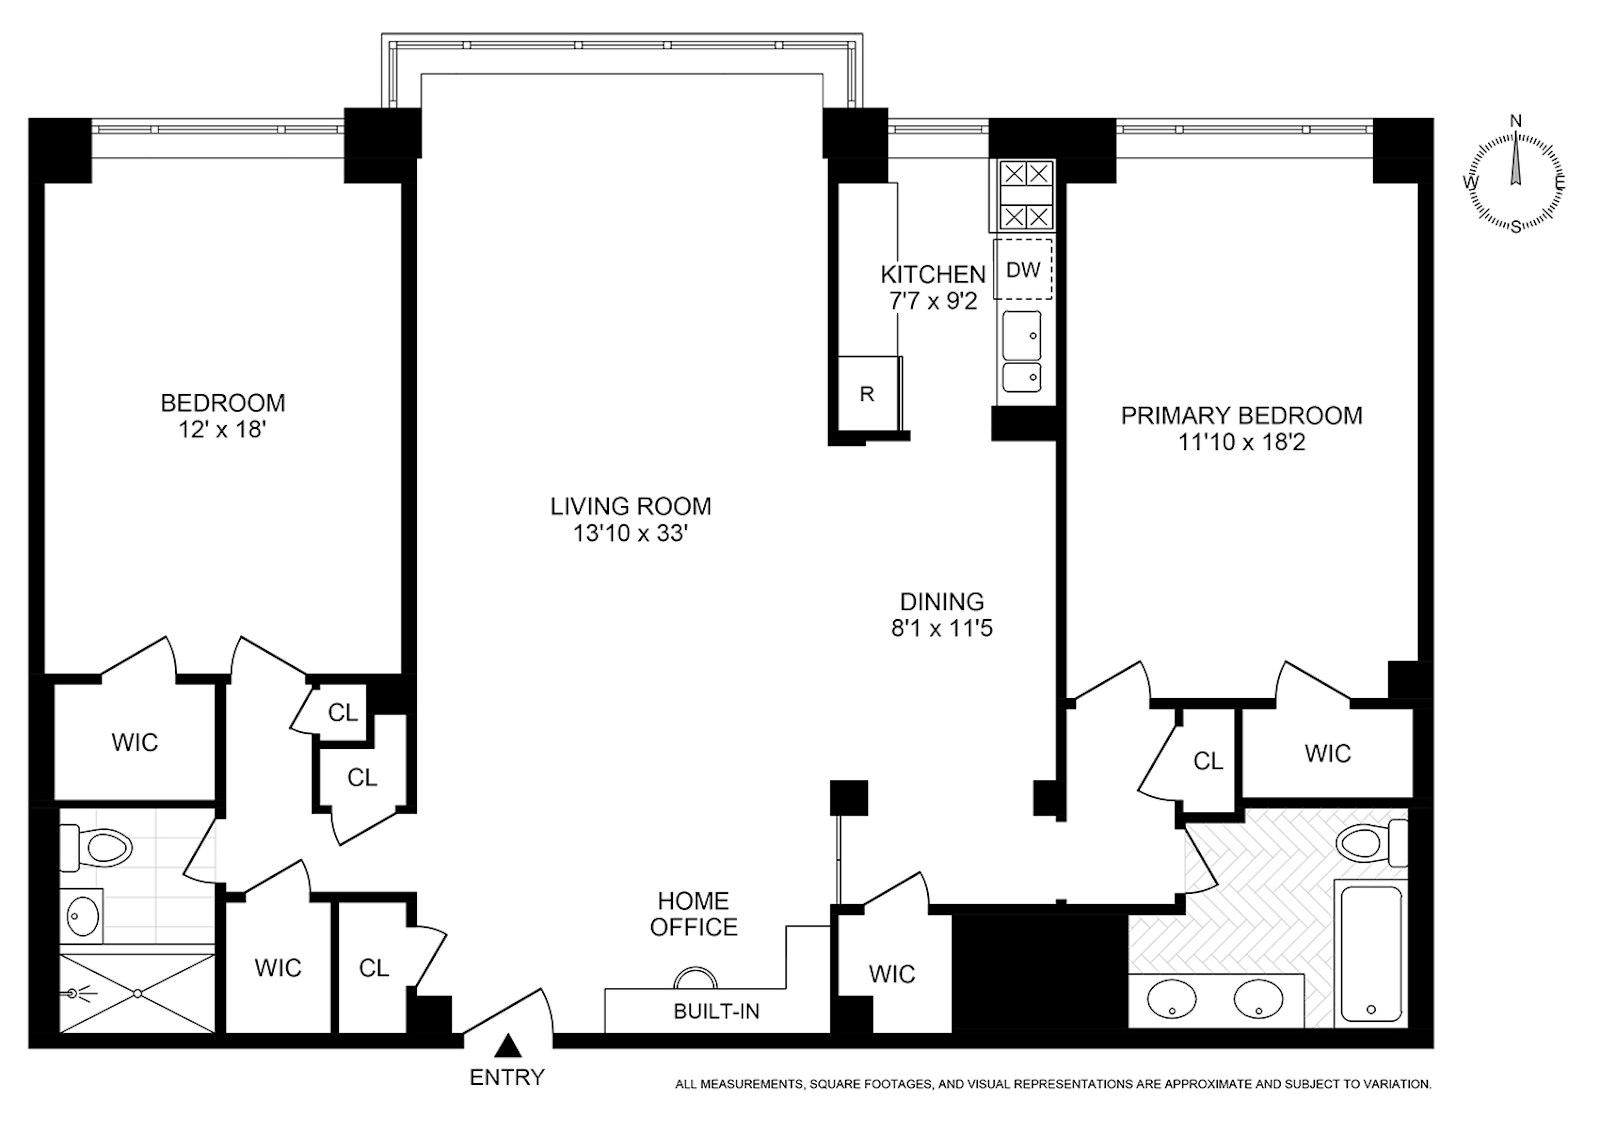 Floorplan for 25 Sutton Place South, 3D